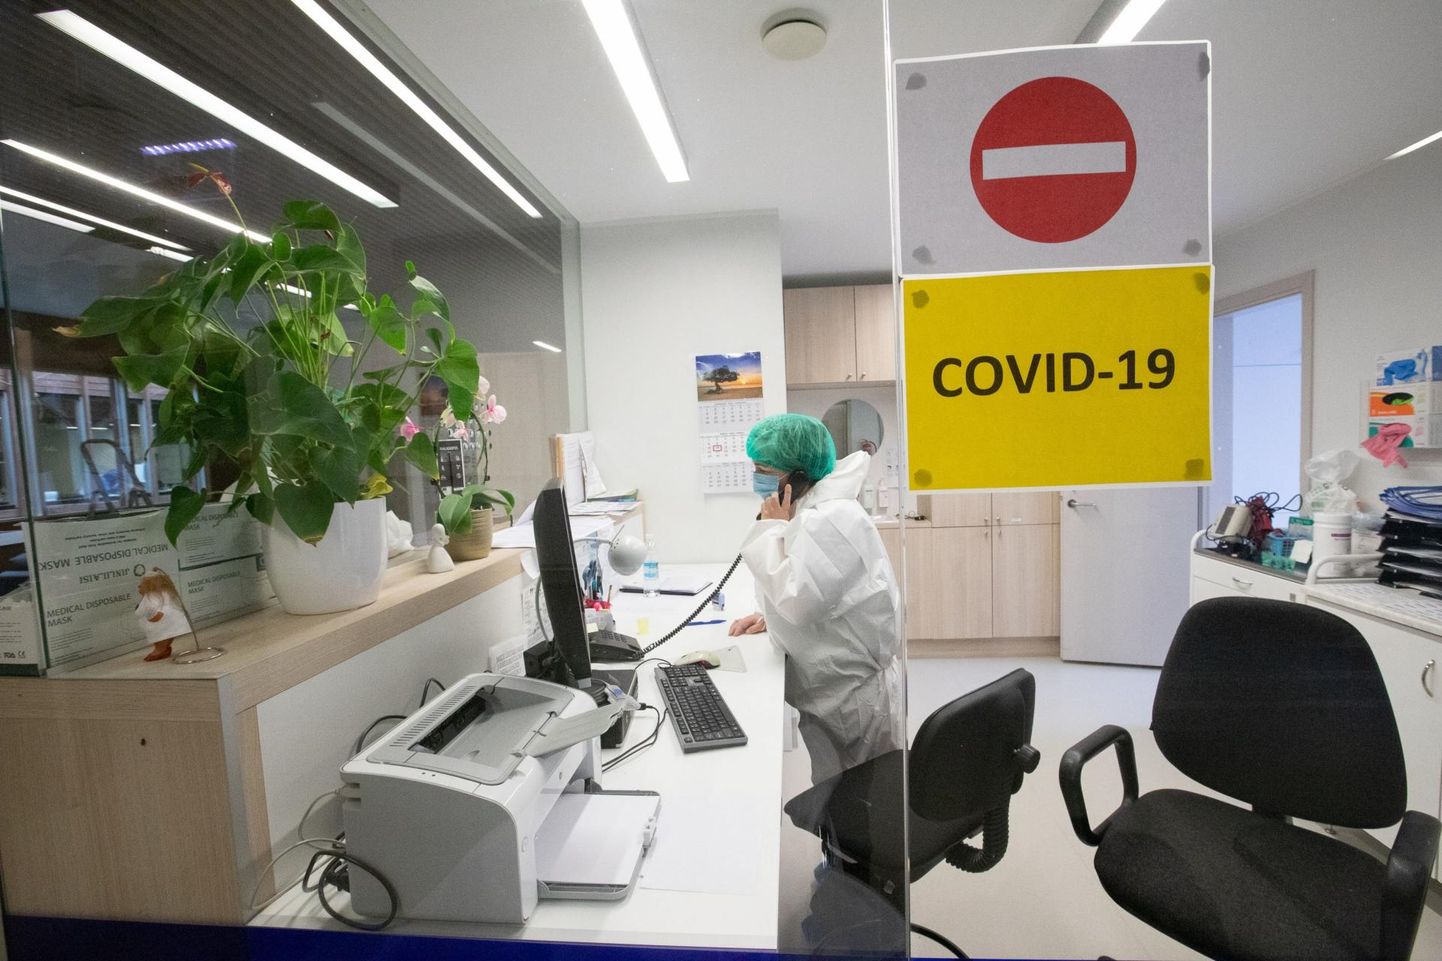 Põhja-Eesti haiglates on COVID-19 patsientide raviks loodud osakonnad haigeid täis. Viljandis jagub veel voodikohti.